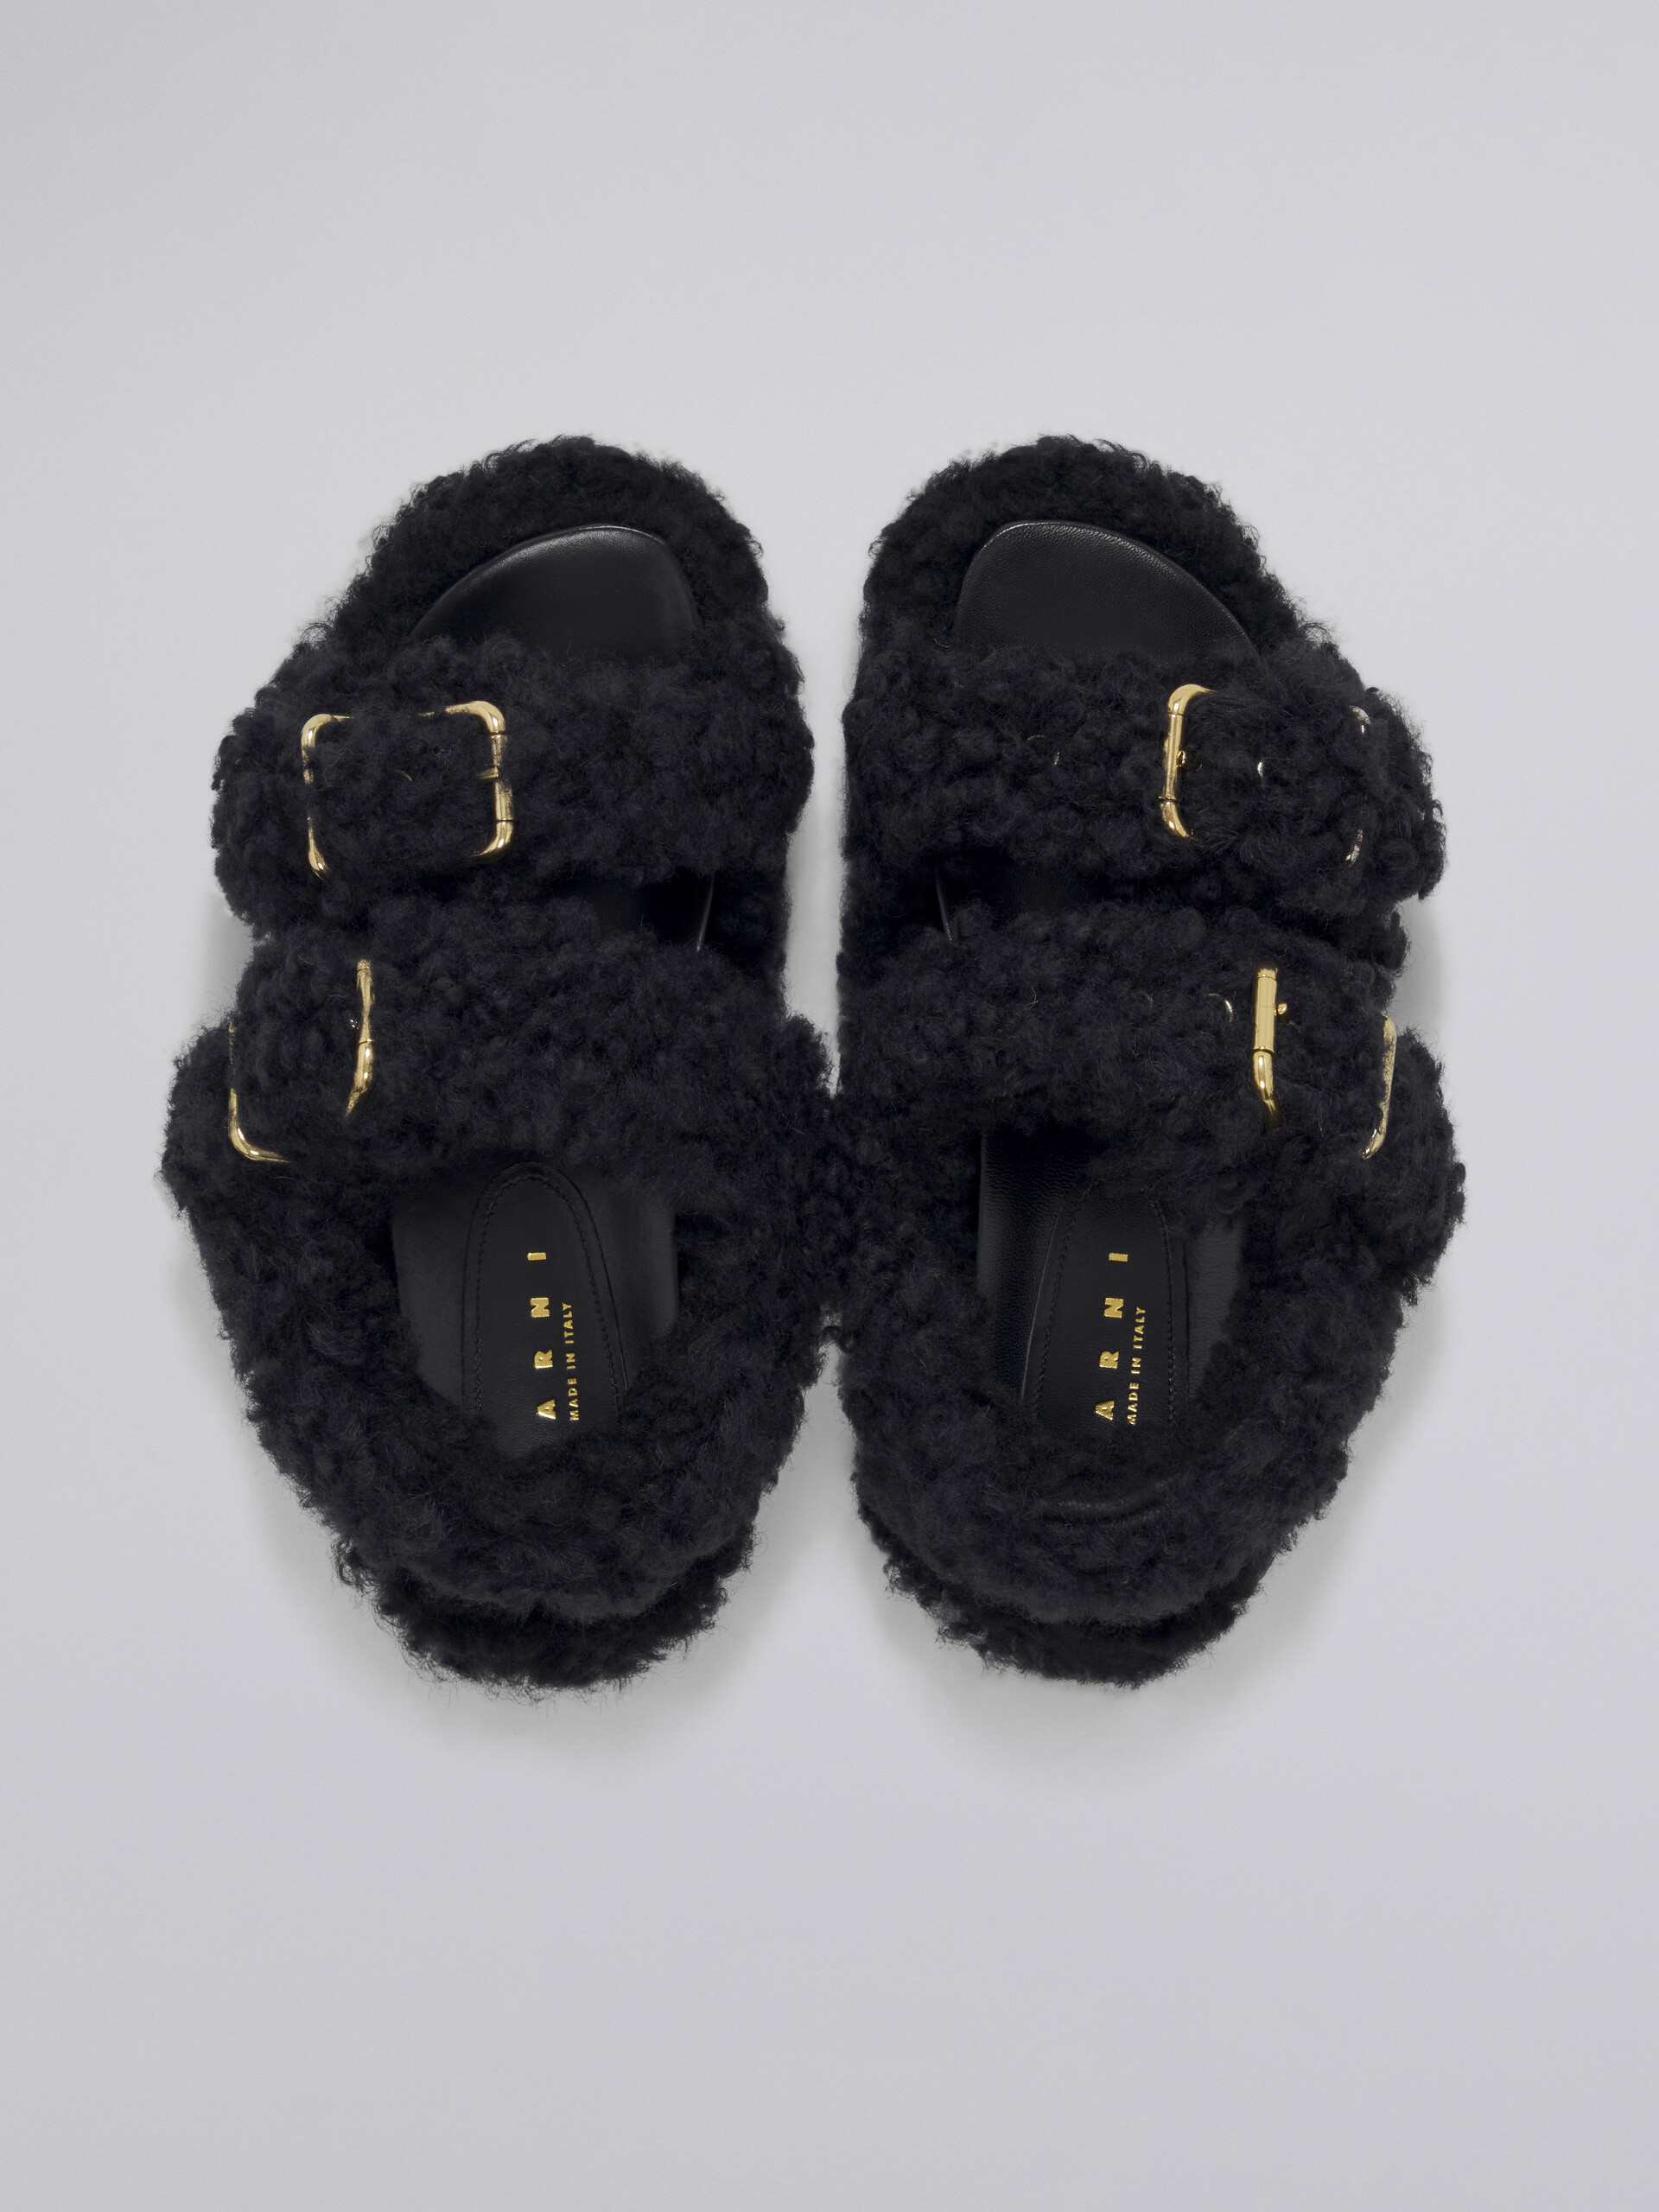 Black shearling Fussbet - Sandals - Image 4